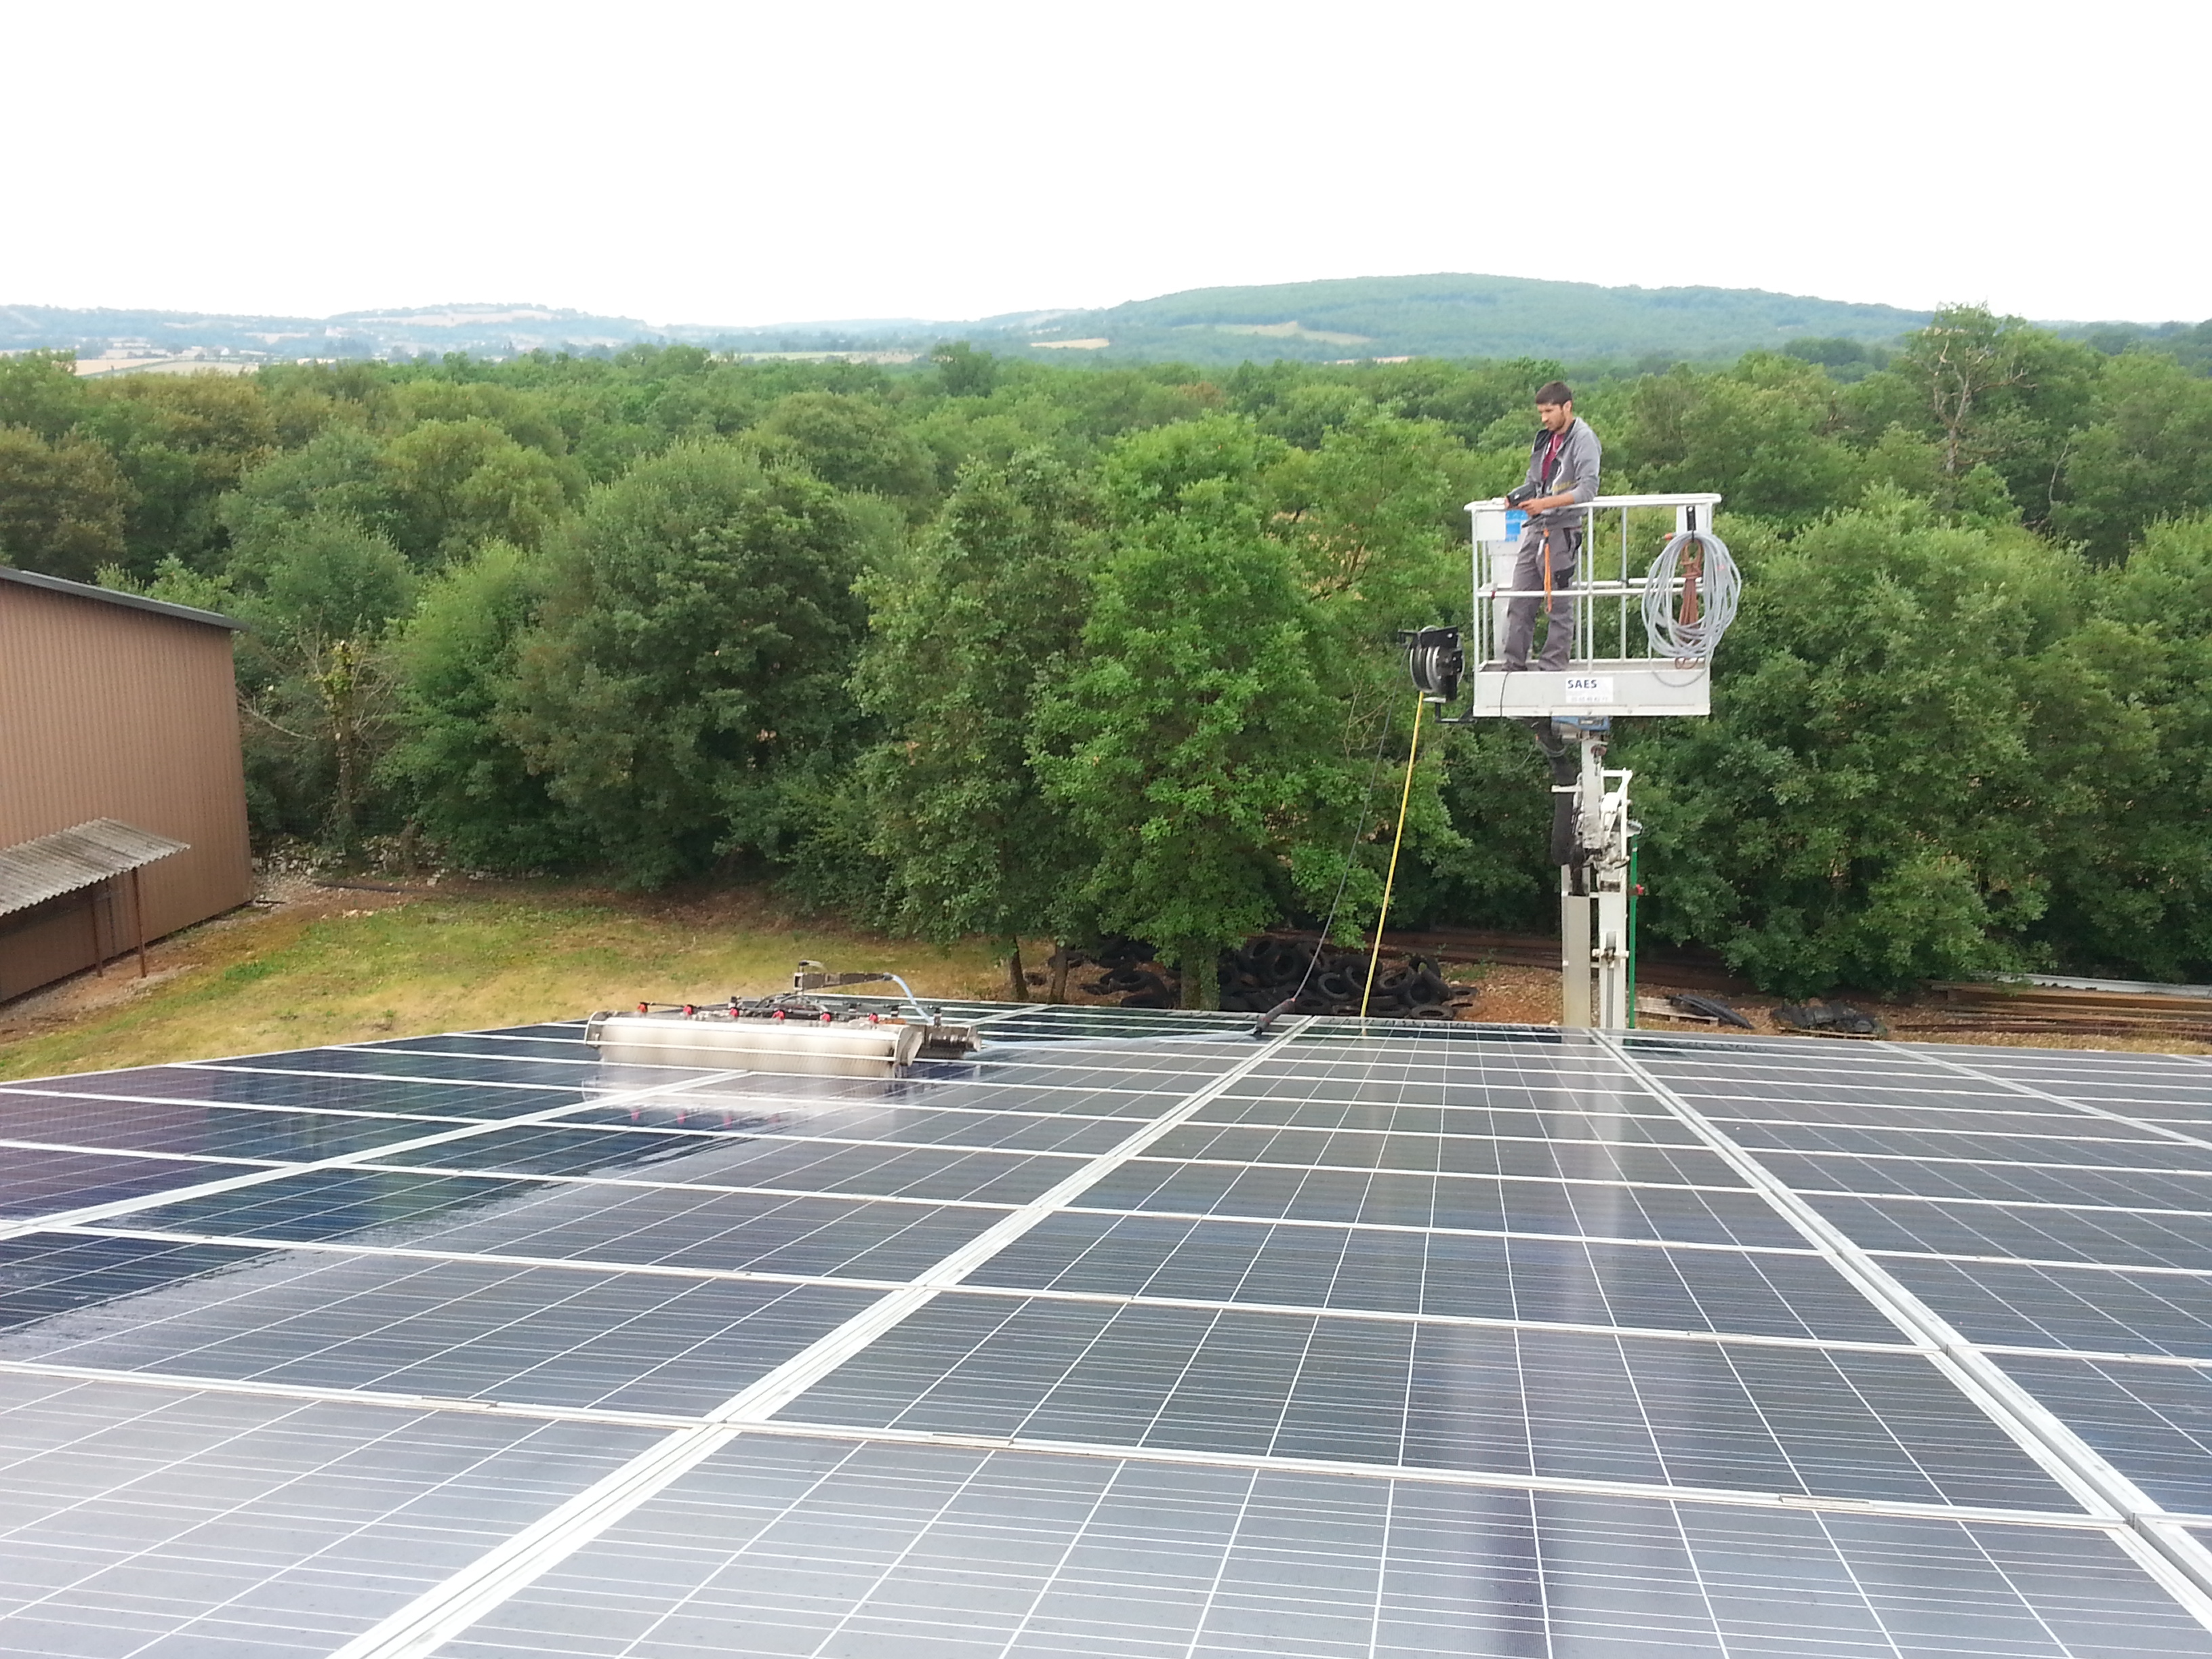 Les robots laveurs arrivent sur les toitures photovoltaïques des bâtiments agricoles.